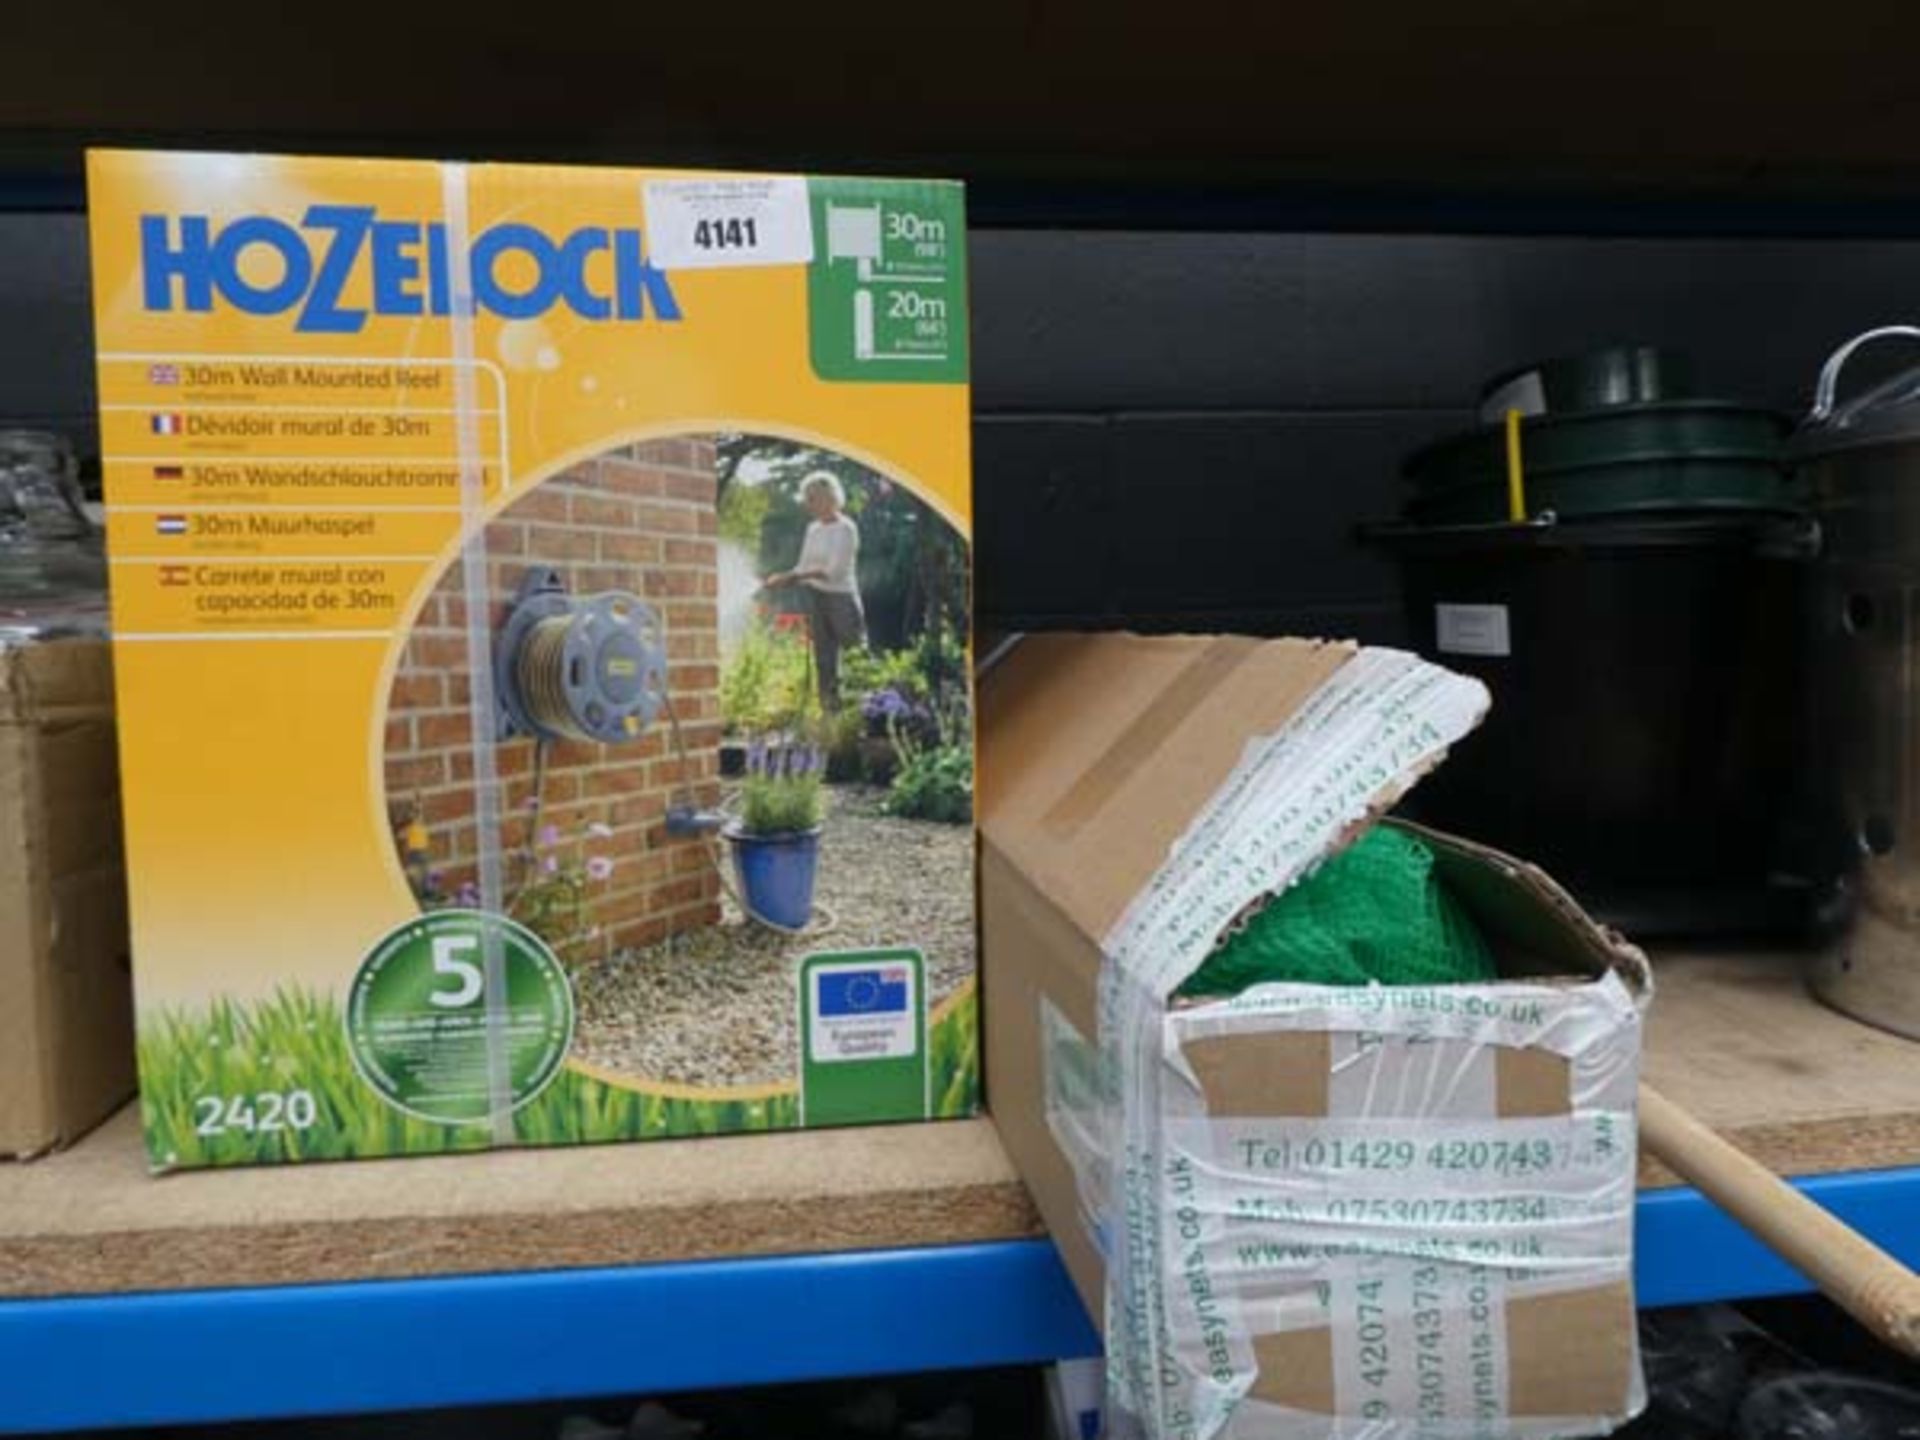 Hozelock hose reel and veg cage kit